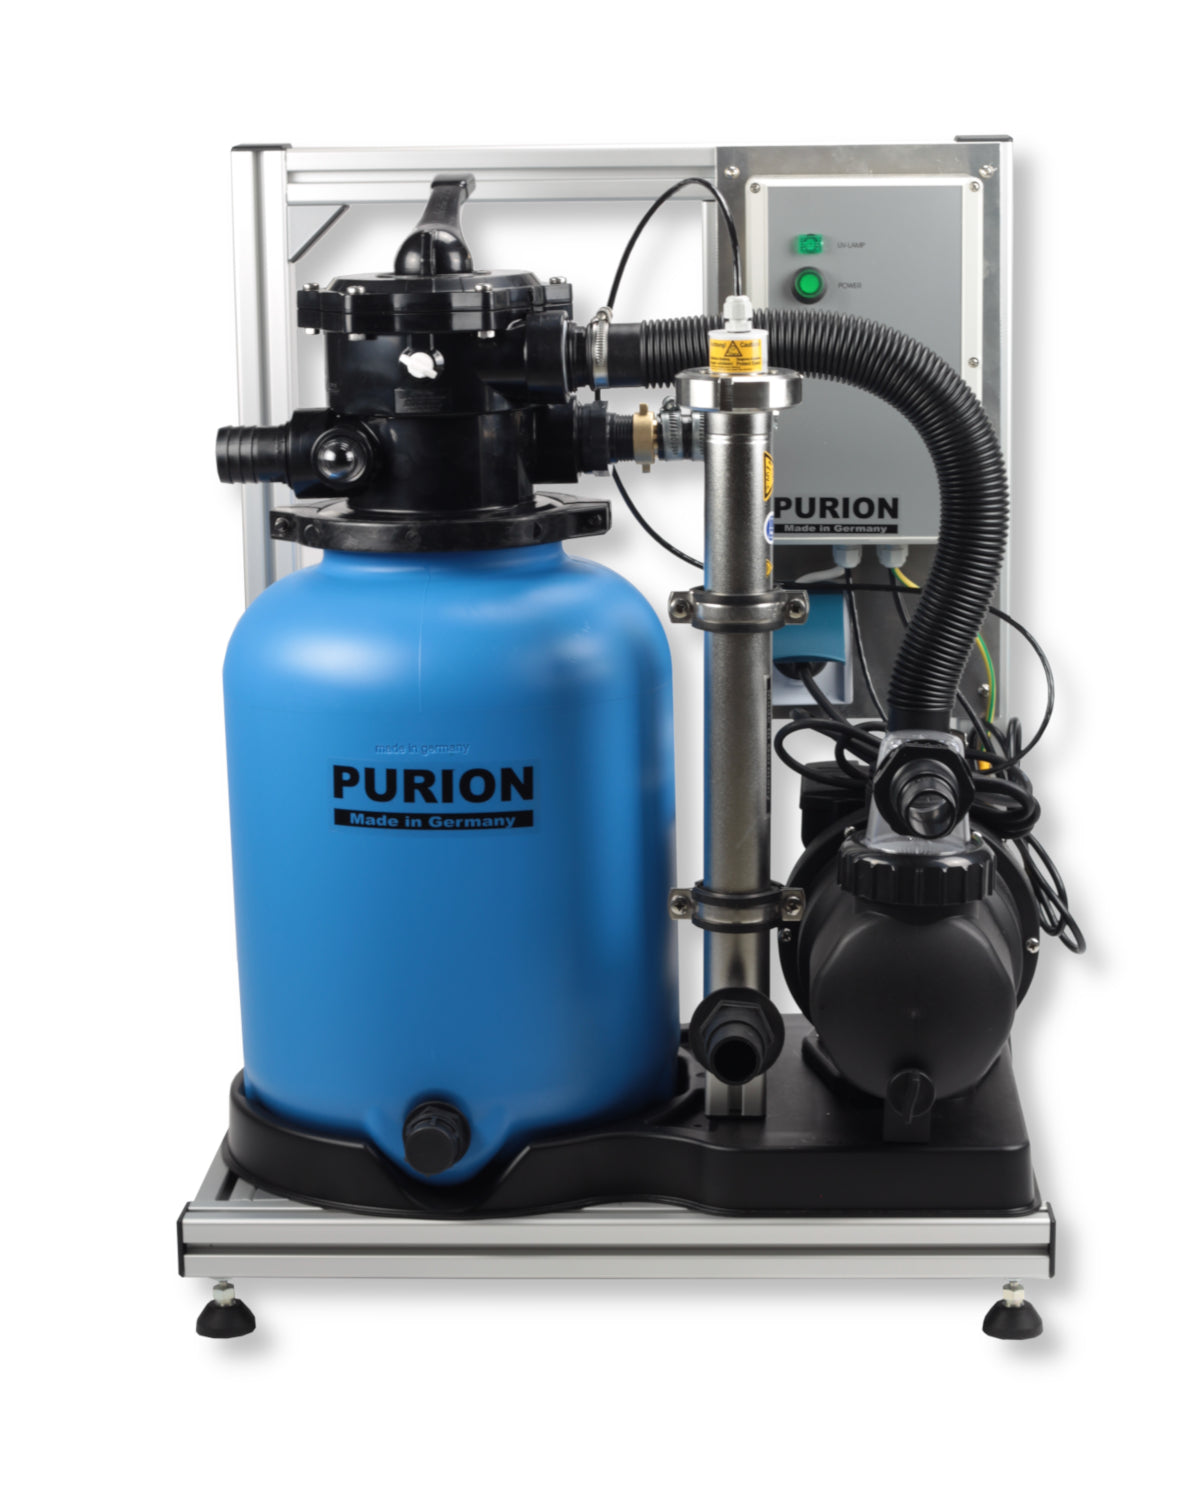 Das PURION Pool 20 Edelstahl Basic Reinigungssystem ist eine hochwertige und langlebige Edelstahl-Filteranlage der PURION GmbH.